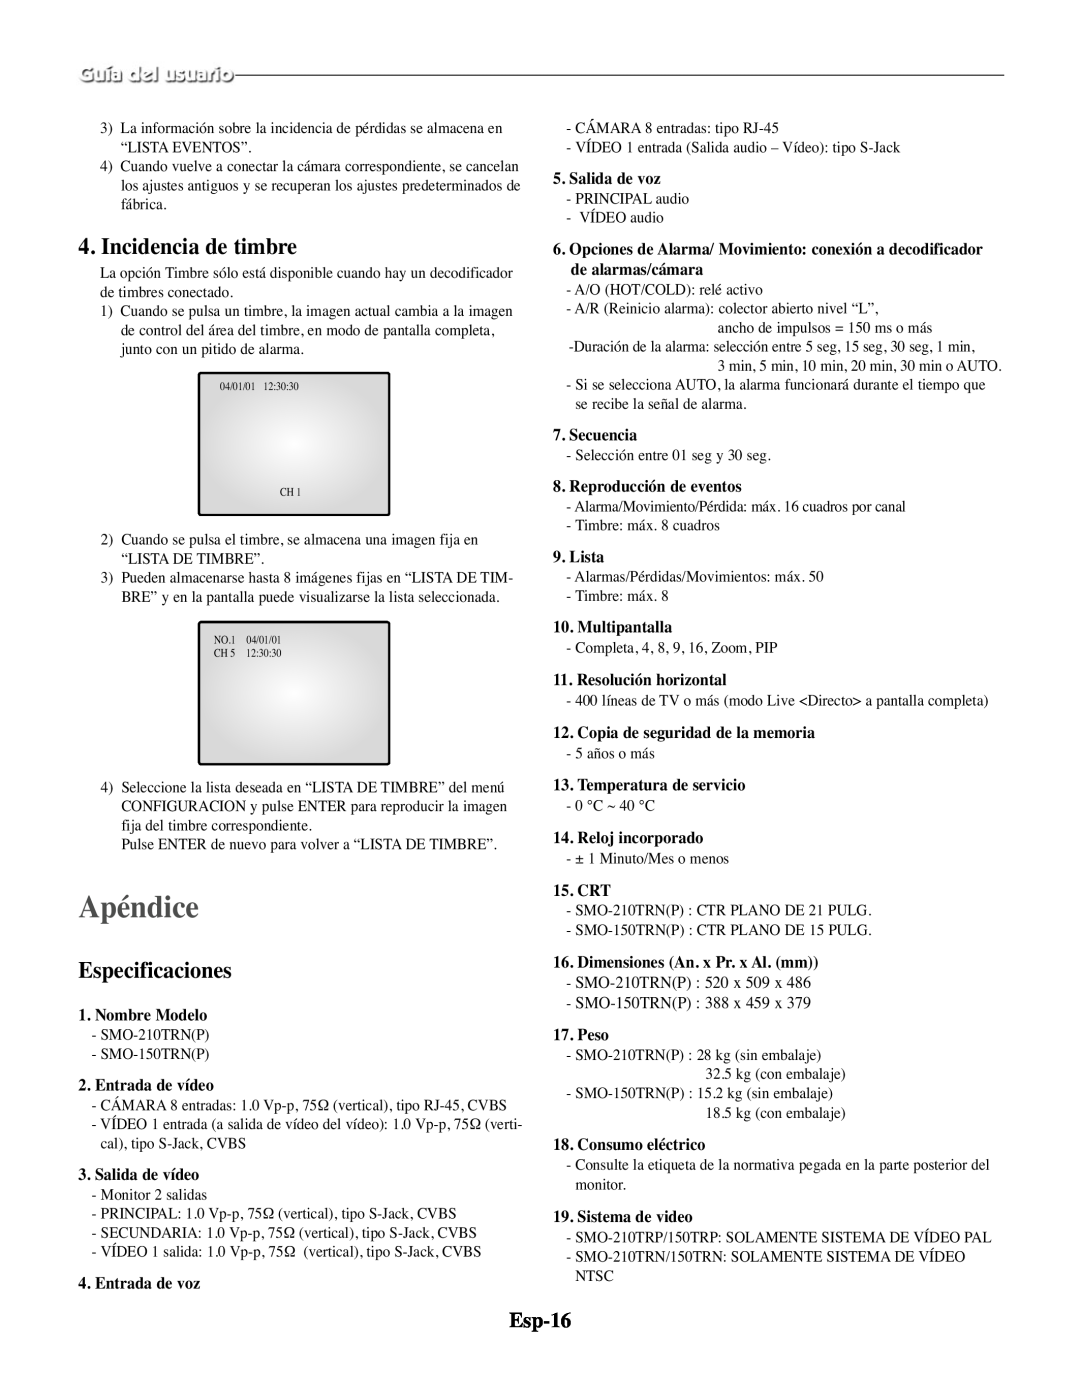 Samsung SMO-210MP/UMG, SMO-210TRP manual Apéndice, Incidencia de timbre, Especificaciones, Esp-16 